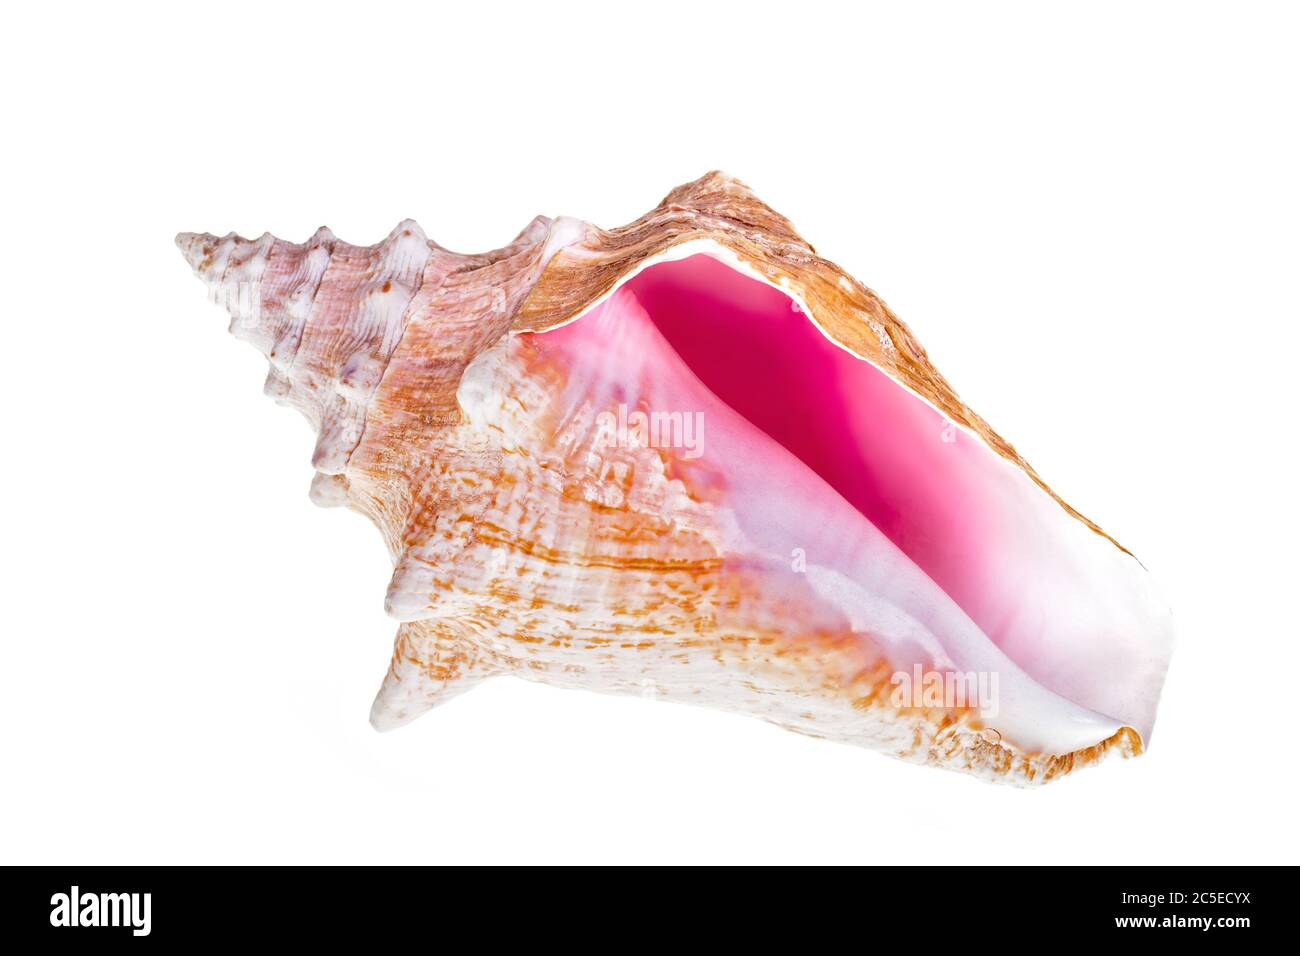 Coquille de conch isolée des Caraïbes sur fond blanc Banque D'Images